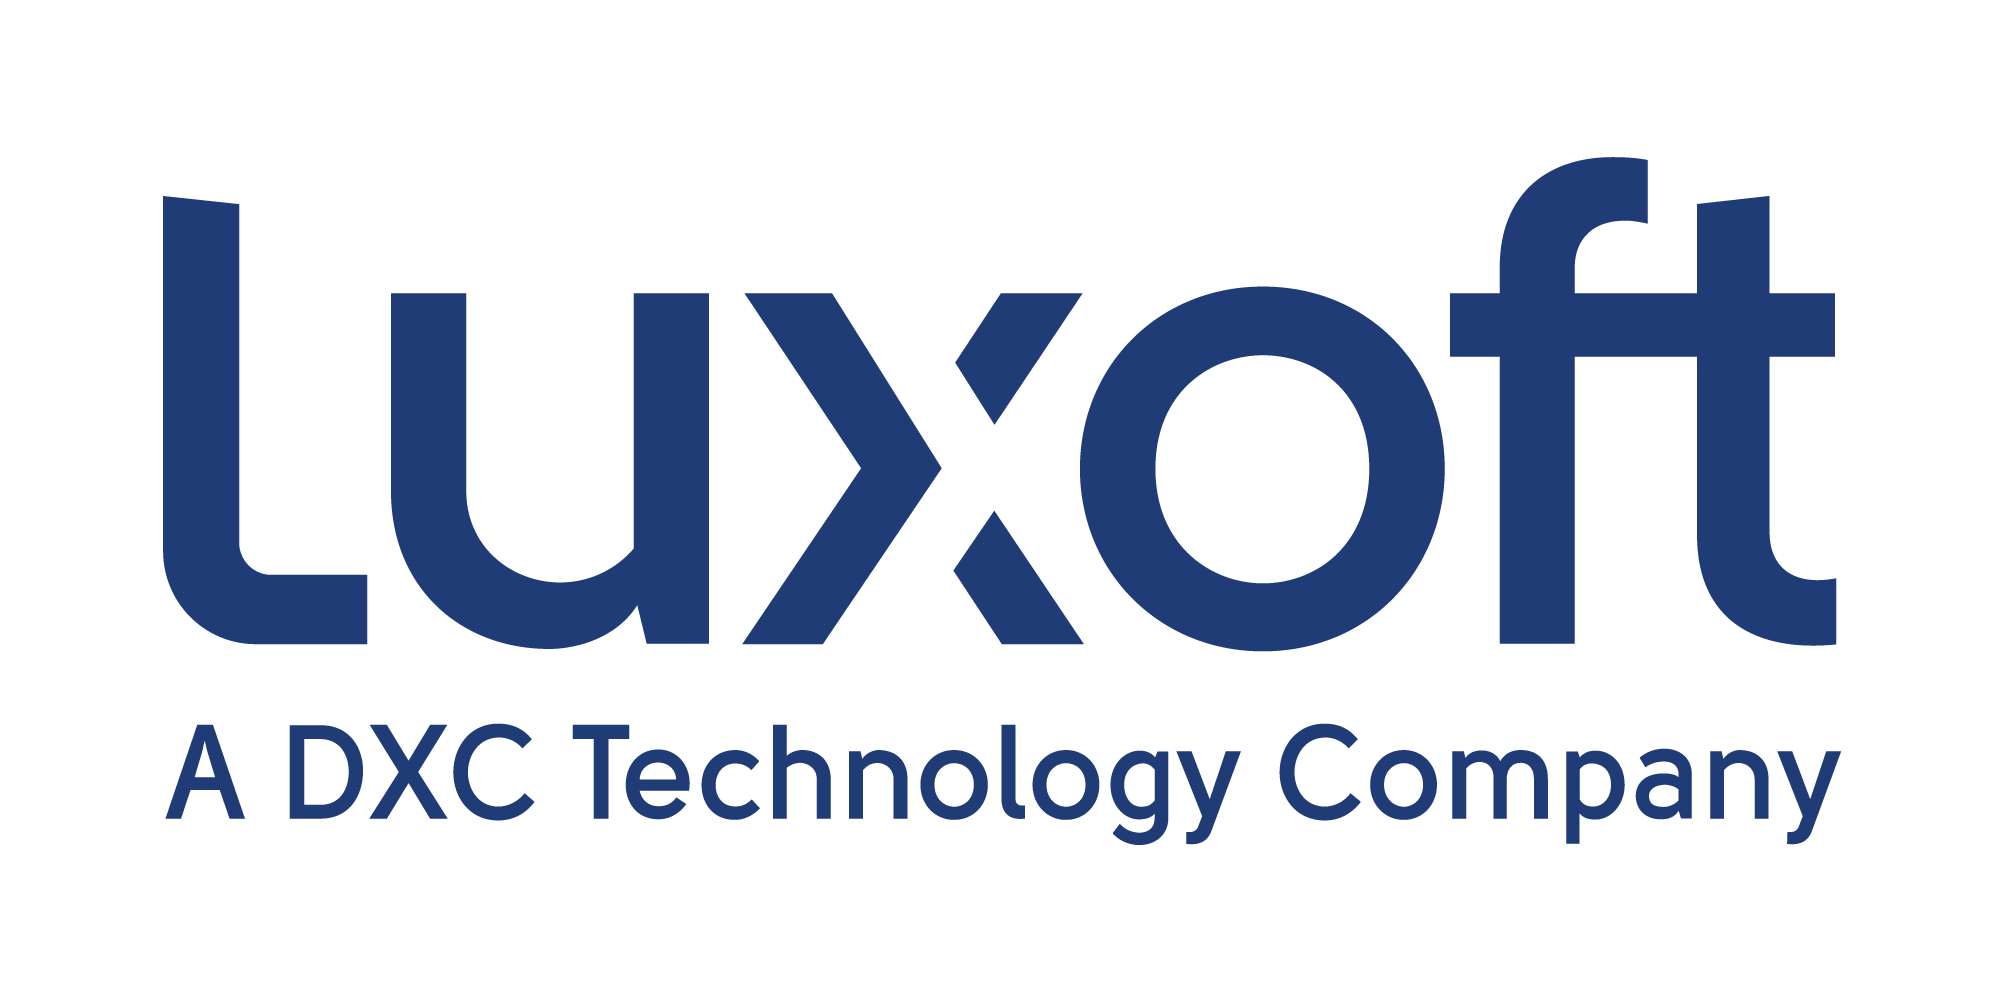 LUXOFT logo